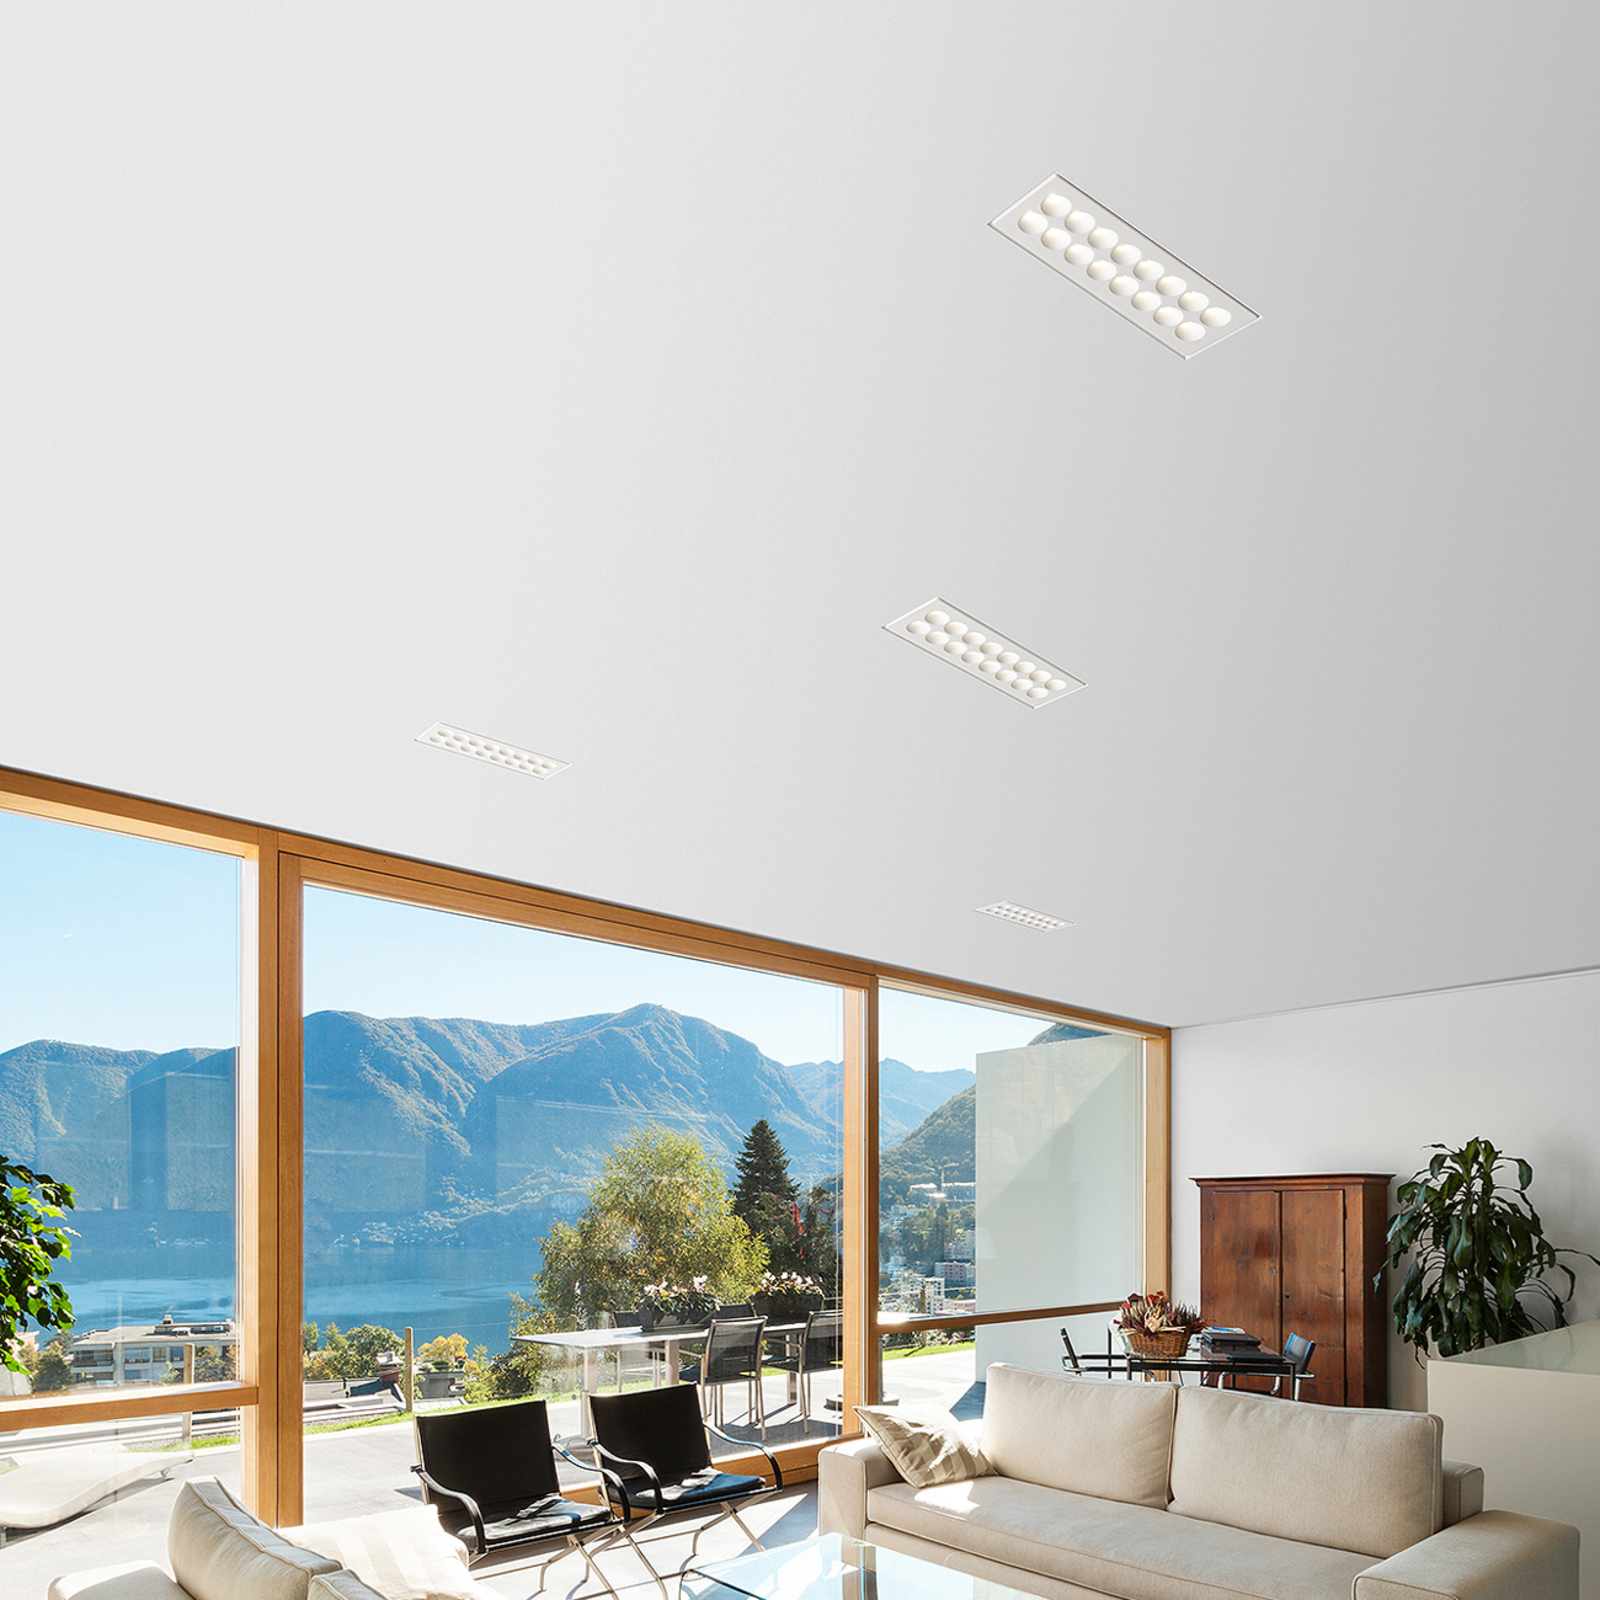 LED plafond inbouwlamp Ade T281 - 21,5 cm x 9 cm